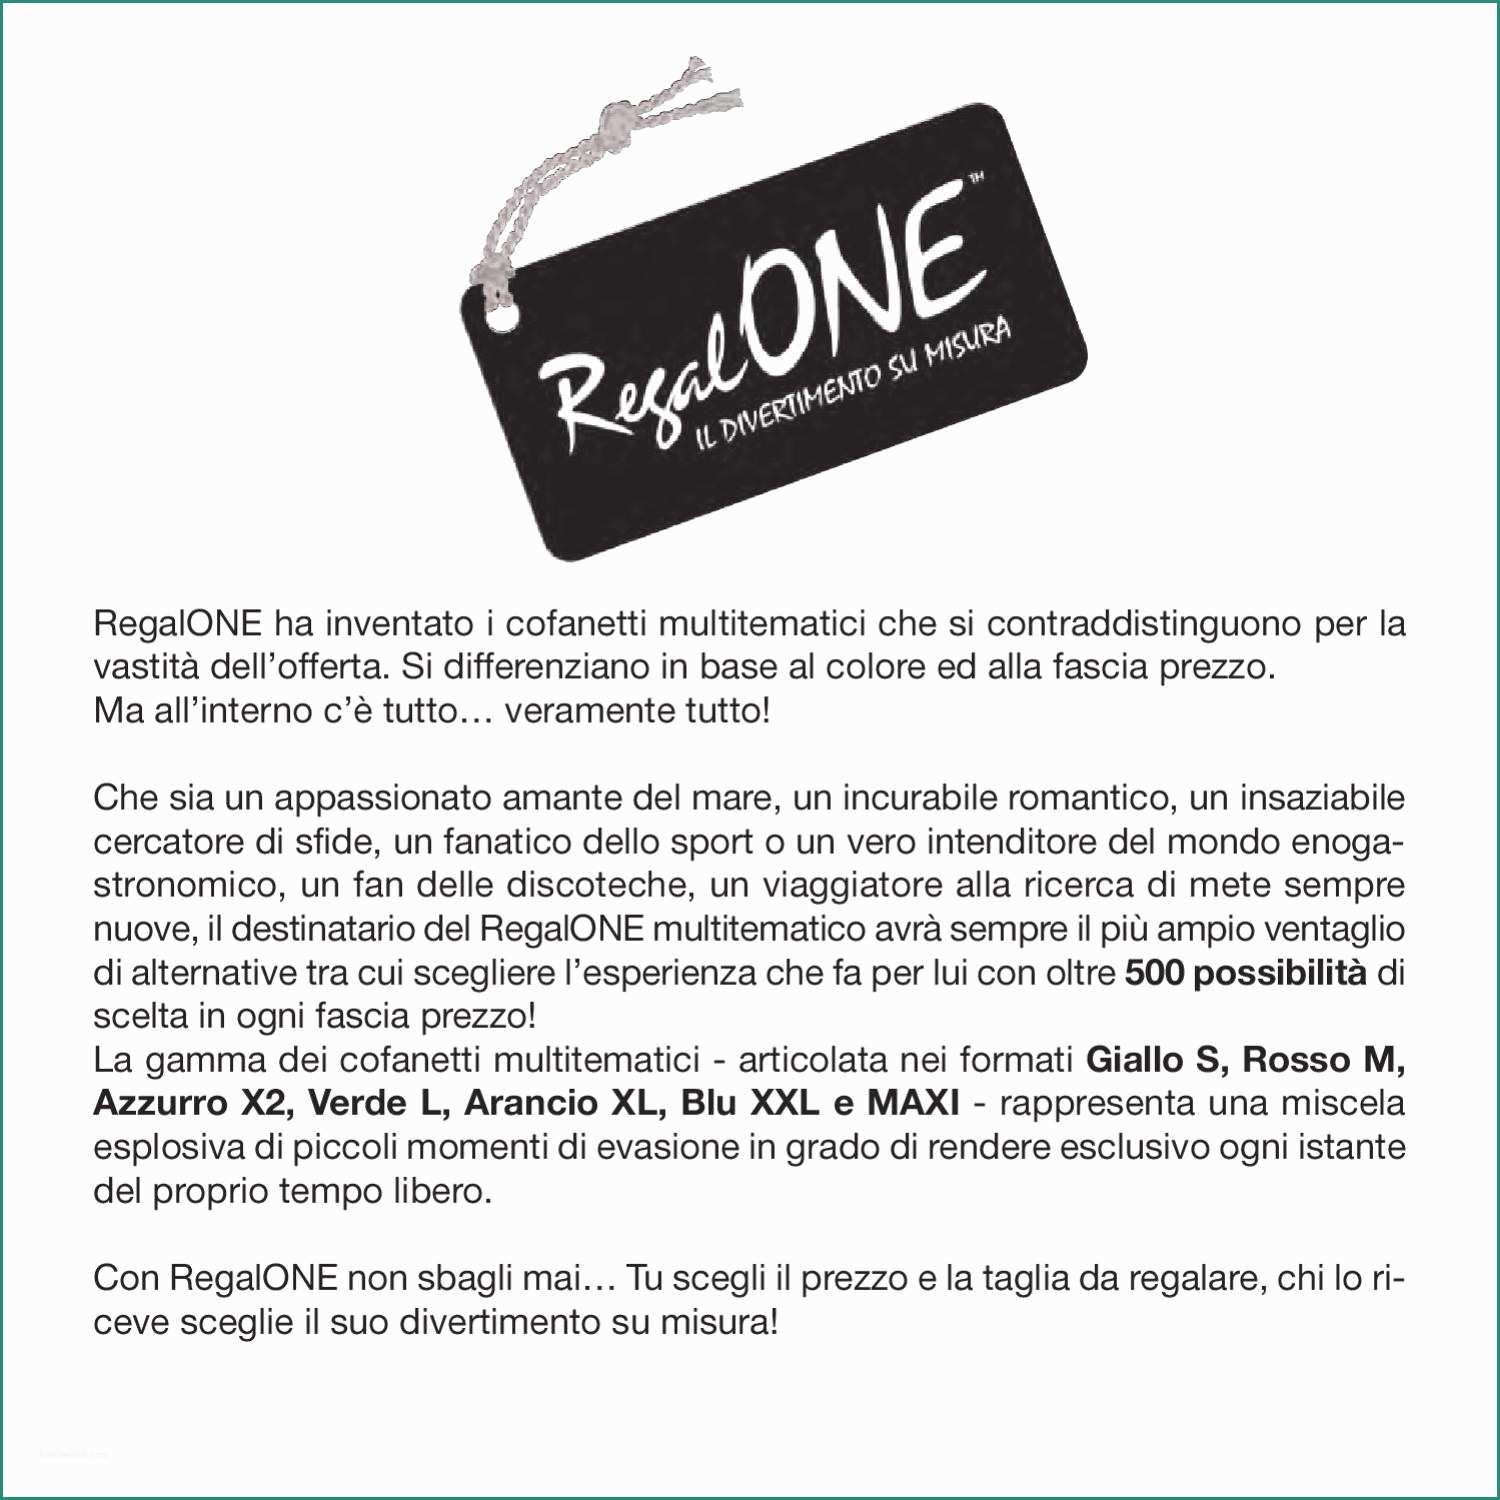 Minipiscine Nuoto Controcorrente E Brochure Rosso M Regalone by Fnac Italia issuu